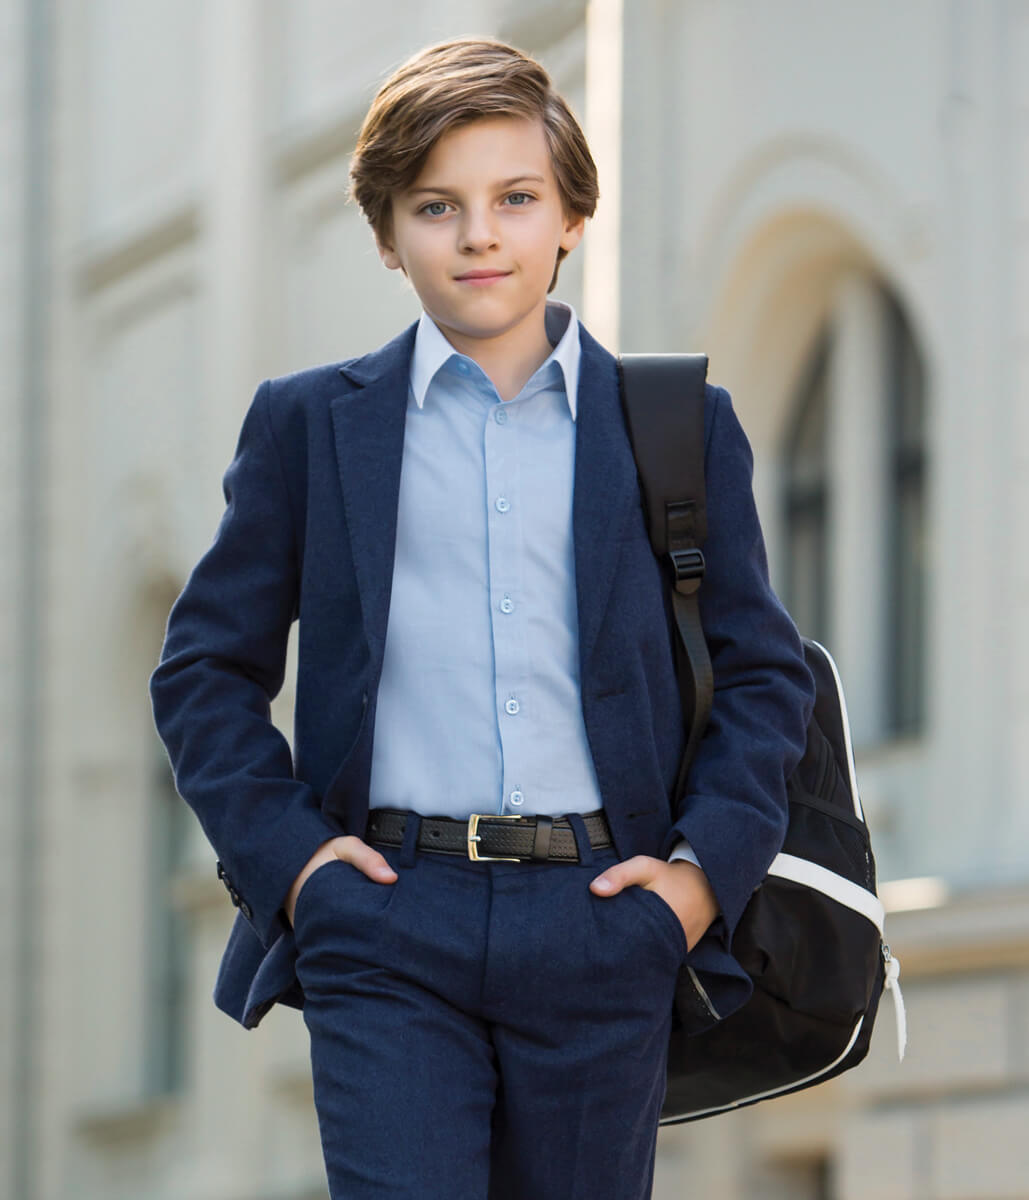 Как модно одеть мальчика 10 лет фото